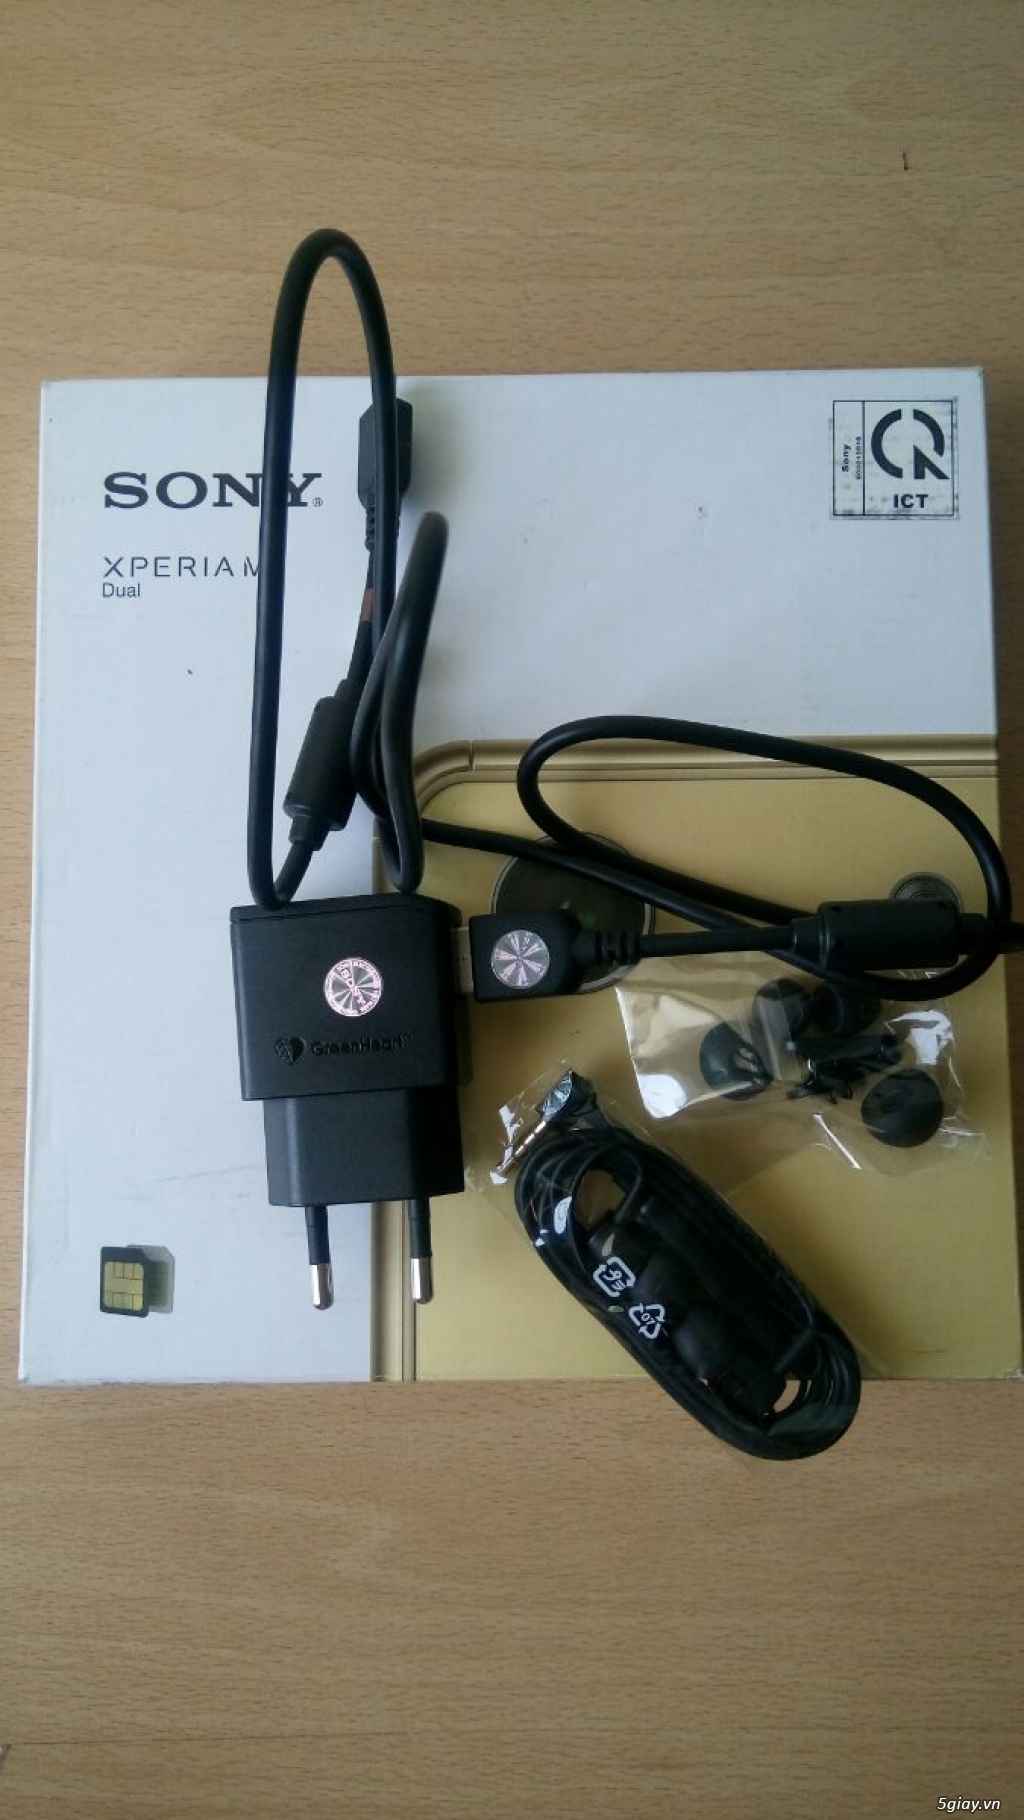 Bán Sony Xperia M5 Dual chính hãng